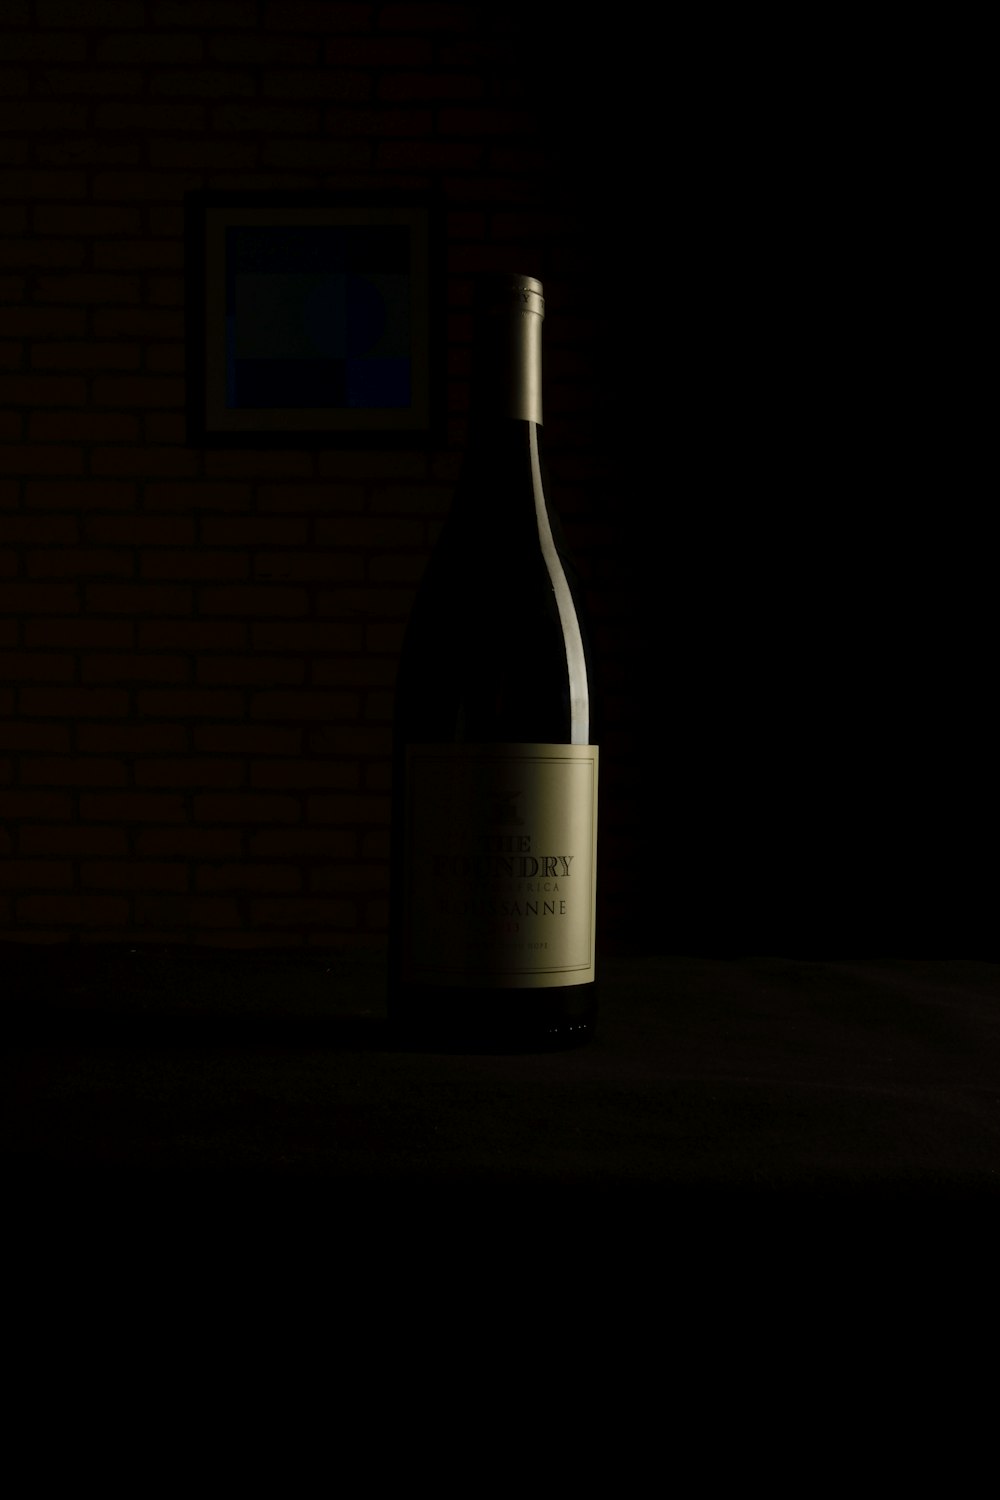 テーブルの上に置かれたワインのボトル